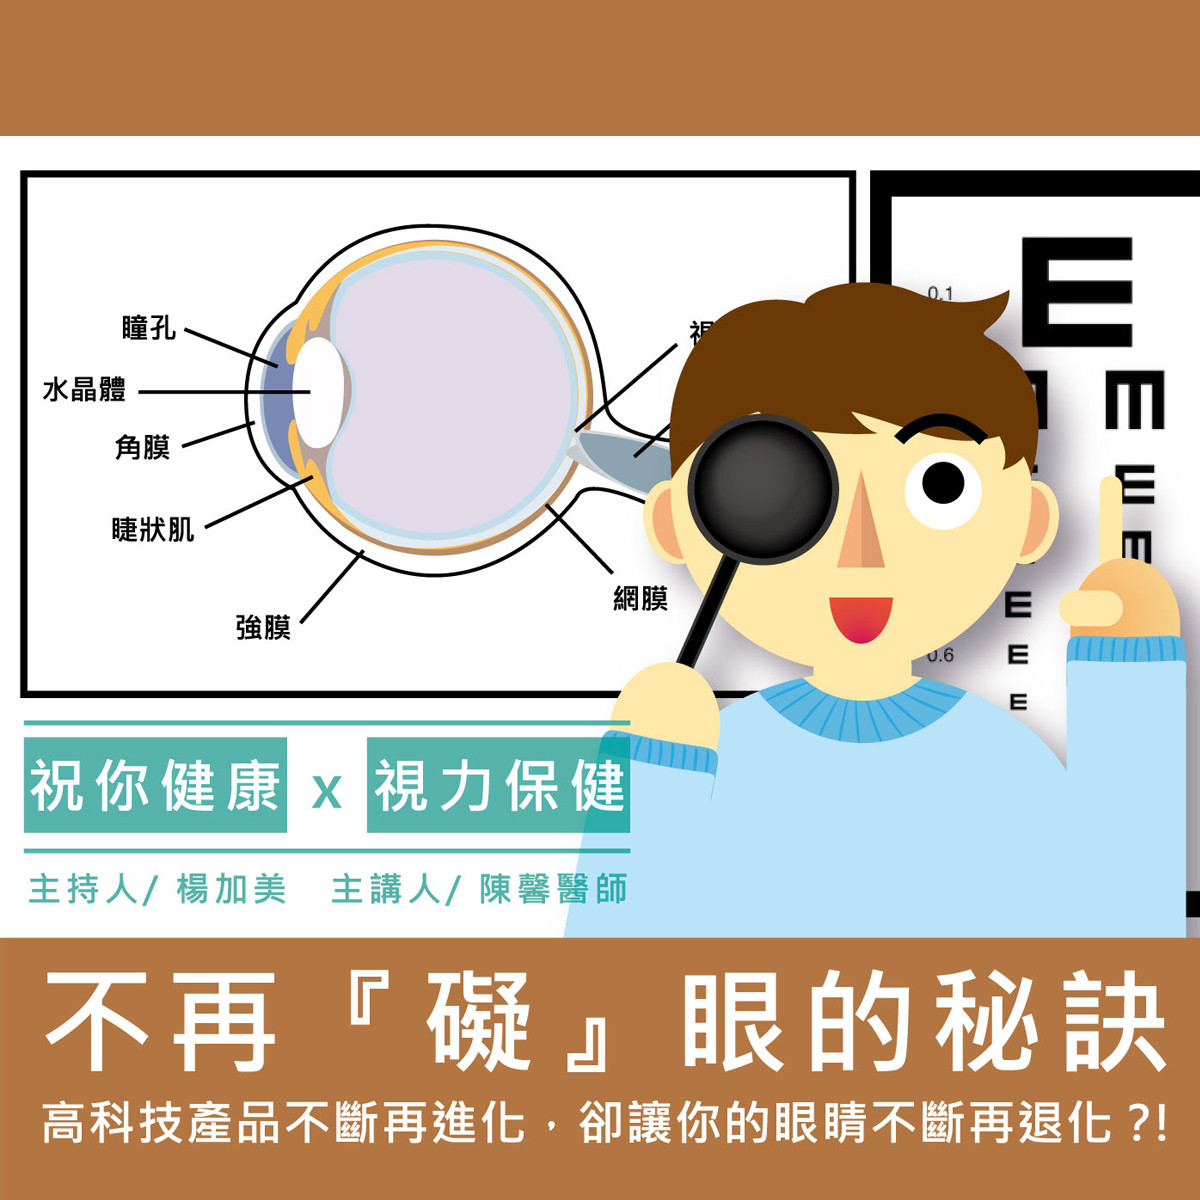 【祝你健康】視力保健 - 2.視覺疲勞封面圖